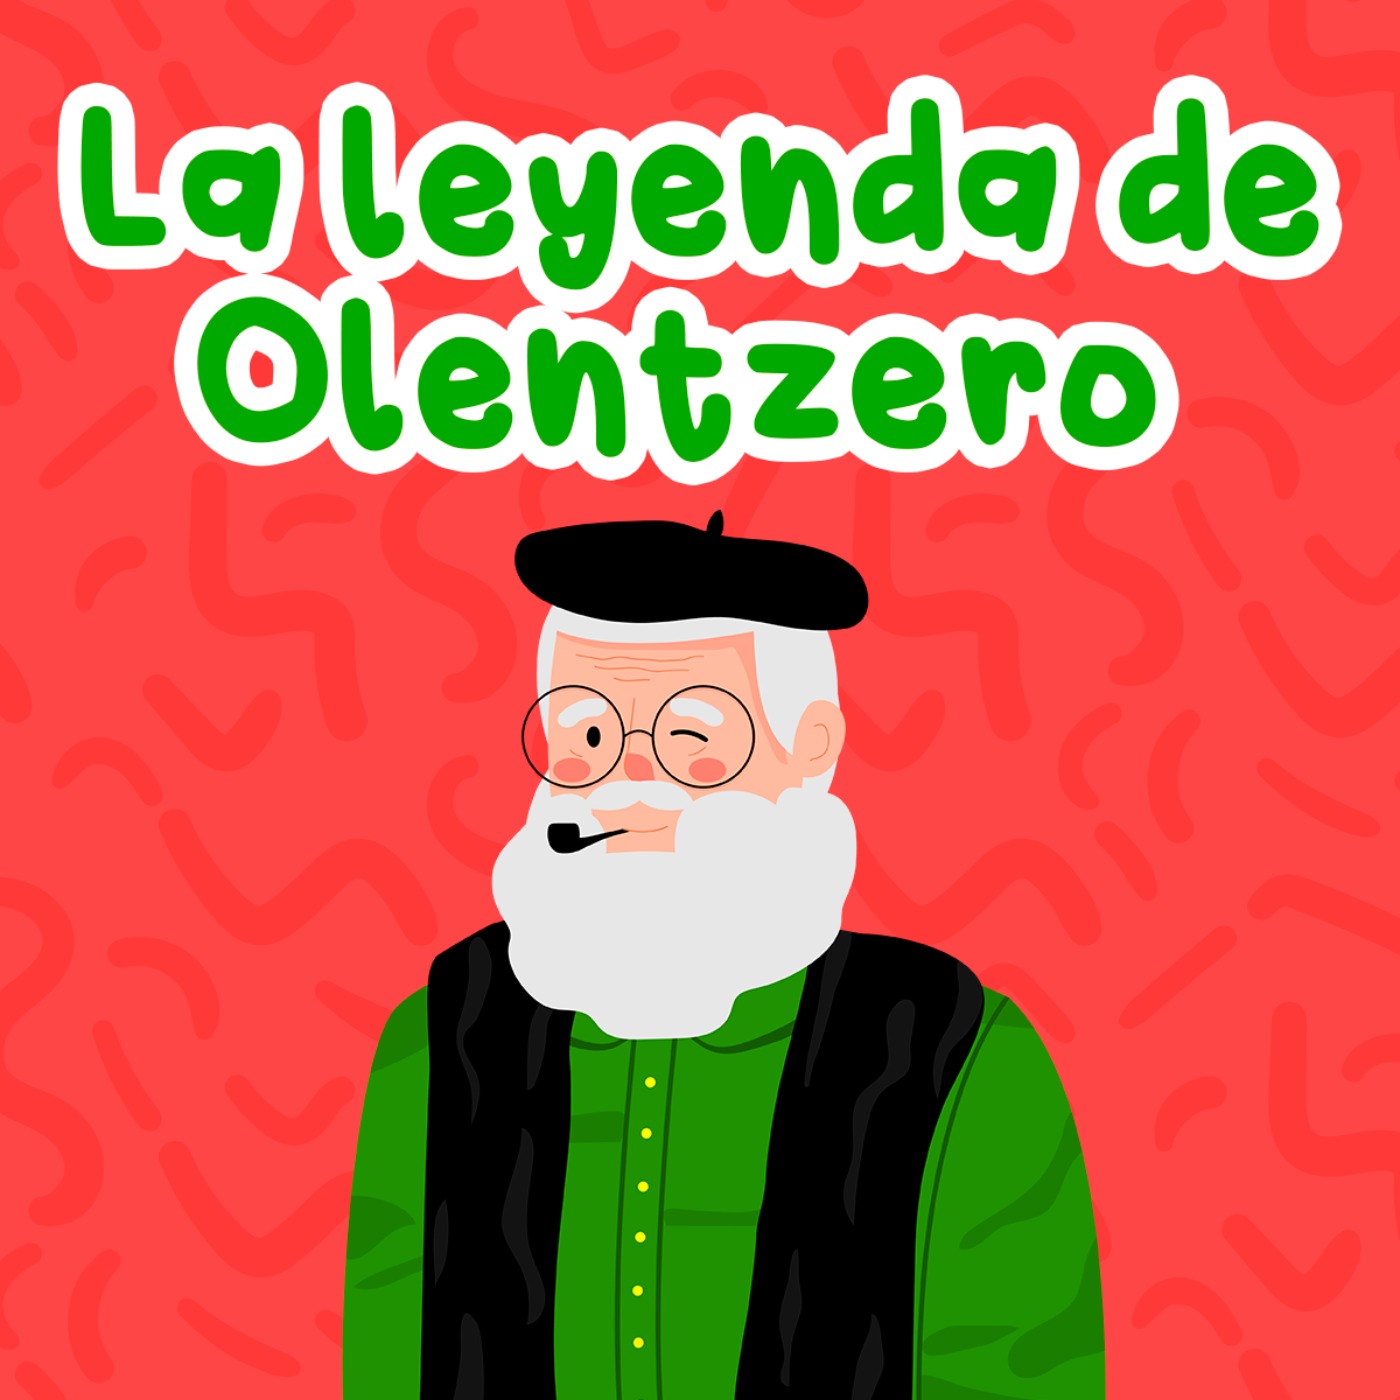 La leyenda de Olentzero 147 | Cuentos Infantiles | Historias navideñas